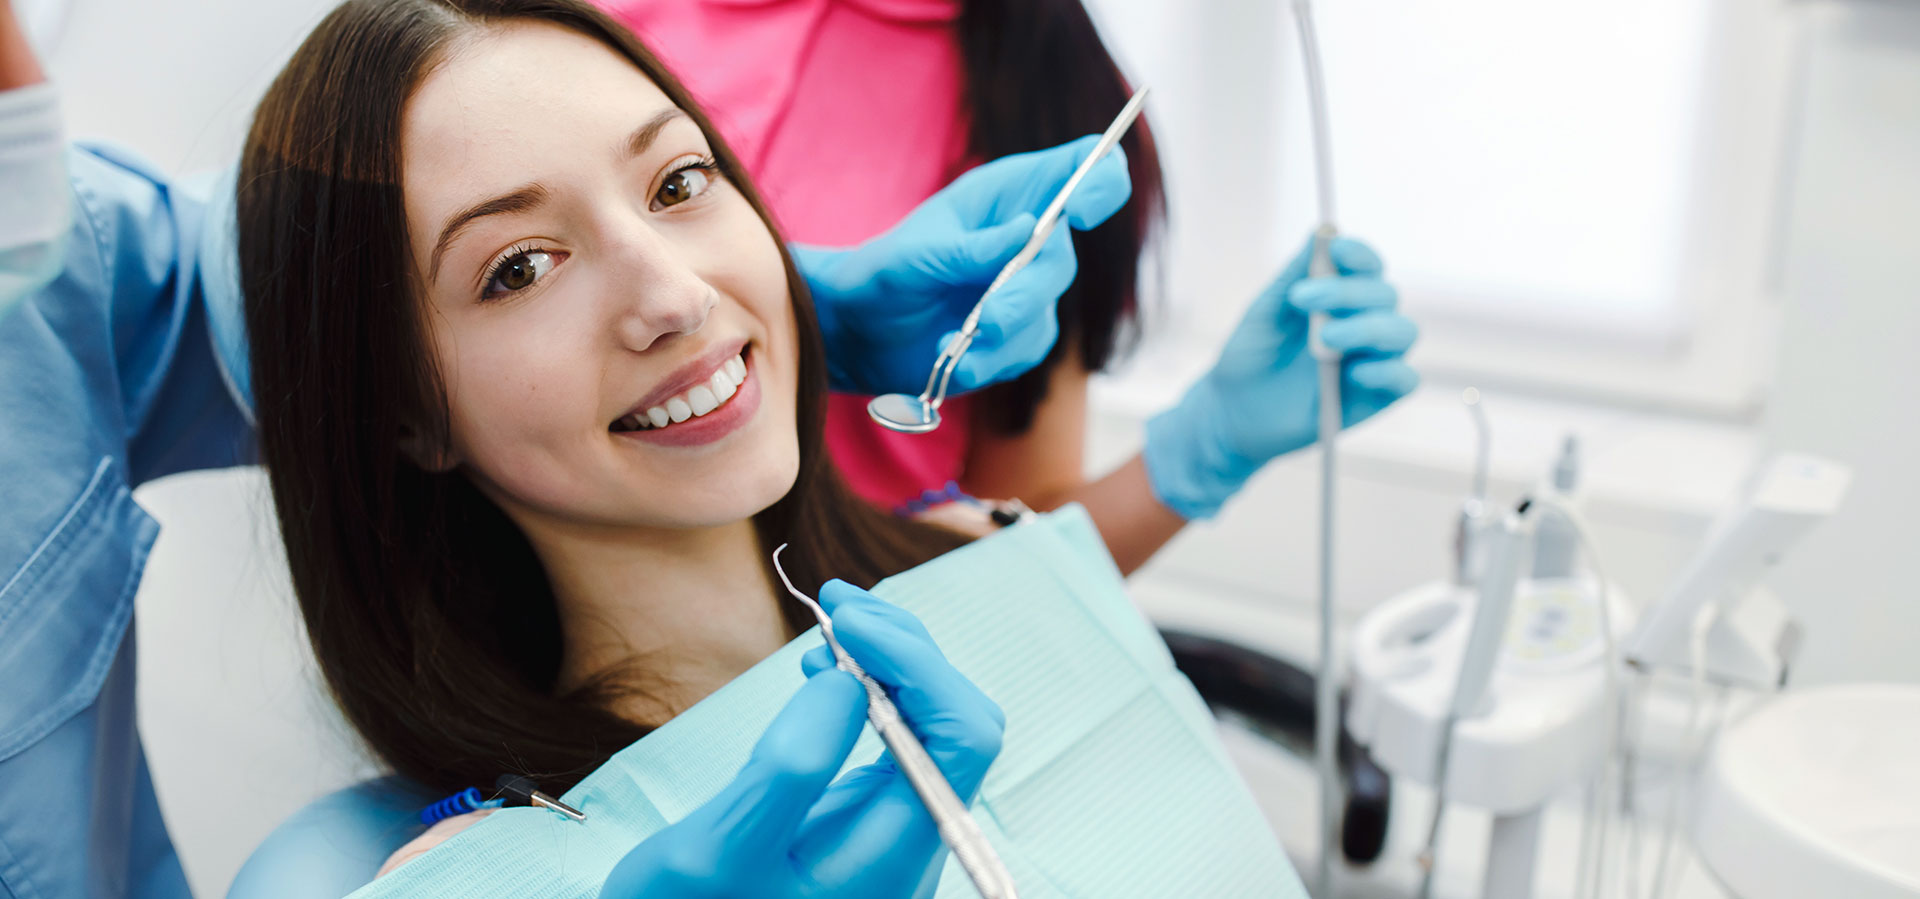 Causas e tratamentos para hipersensibilidade dentinária